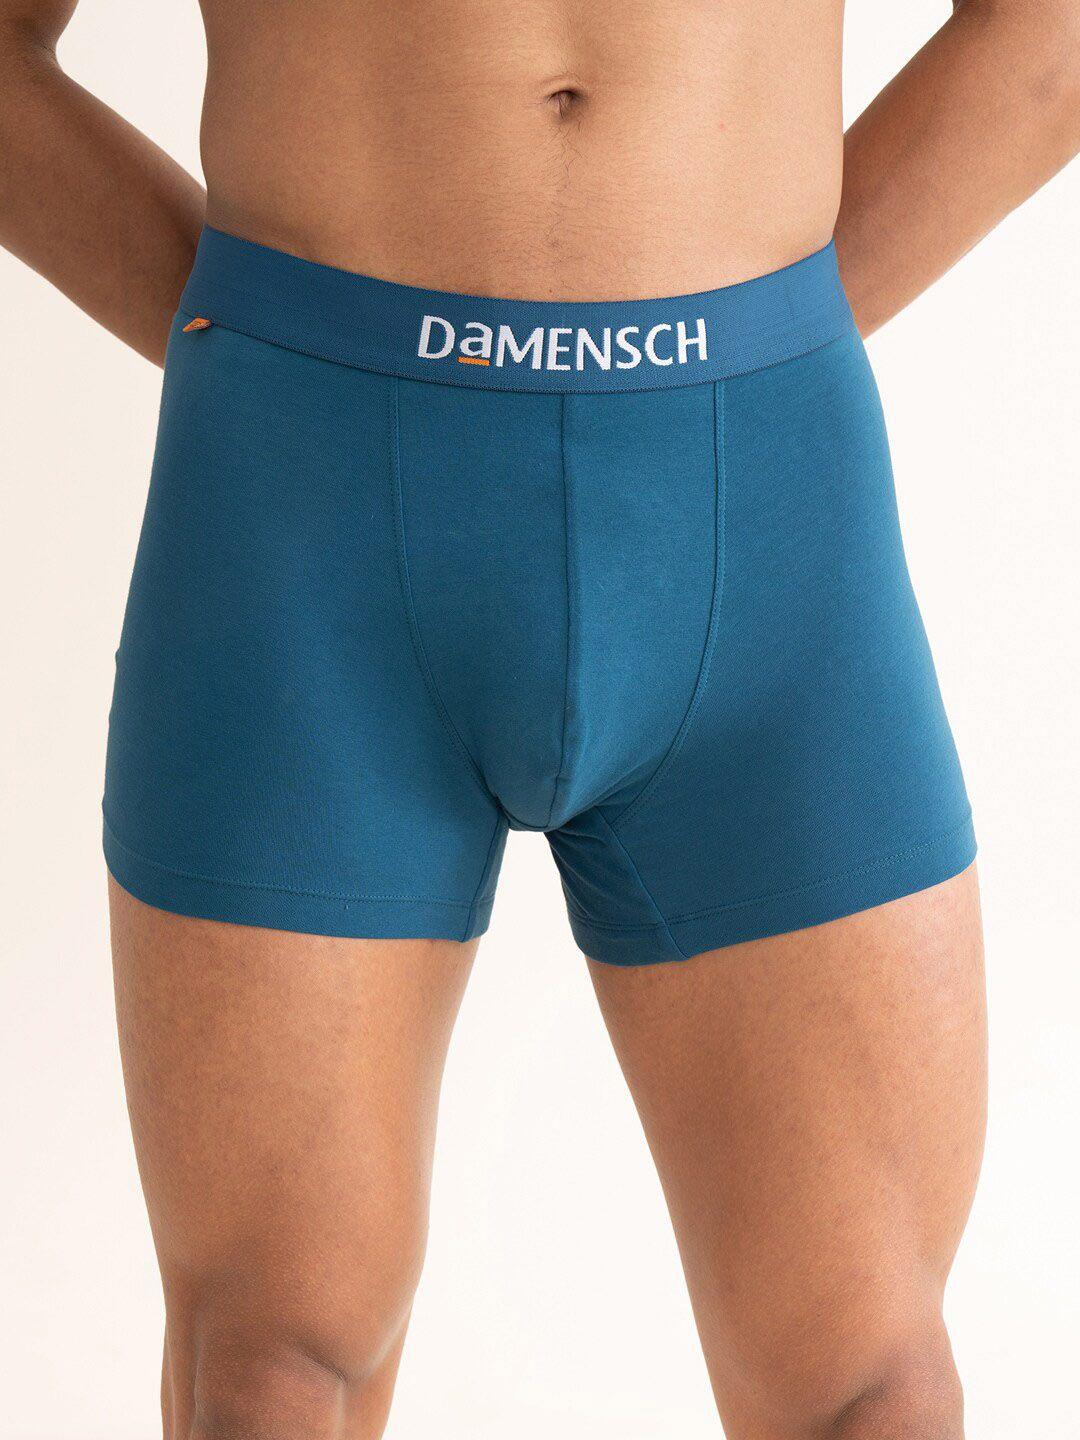 damensch men teal-blue solid deo-cotton trunk dam-ctst-t-lyb